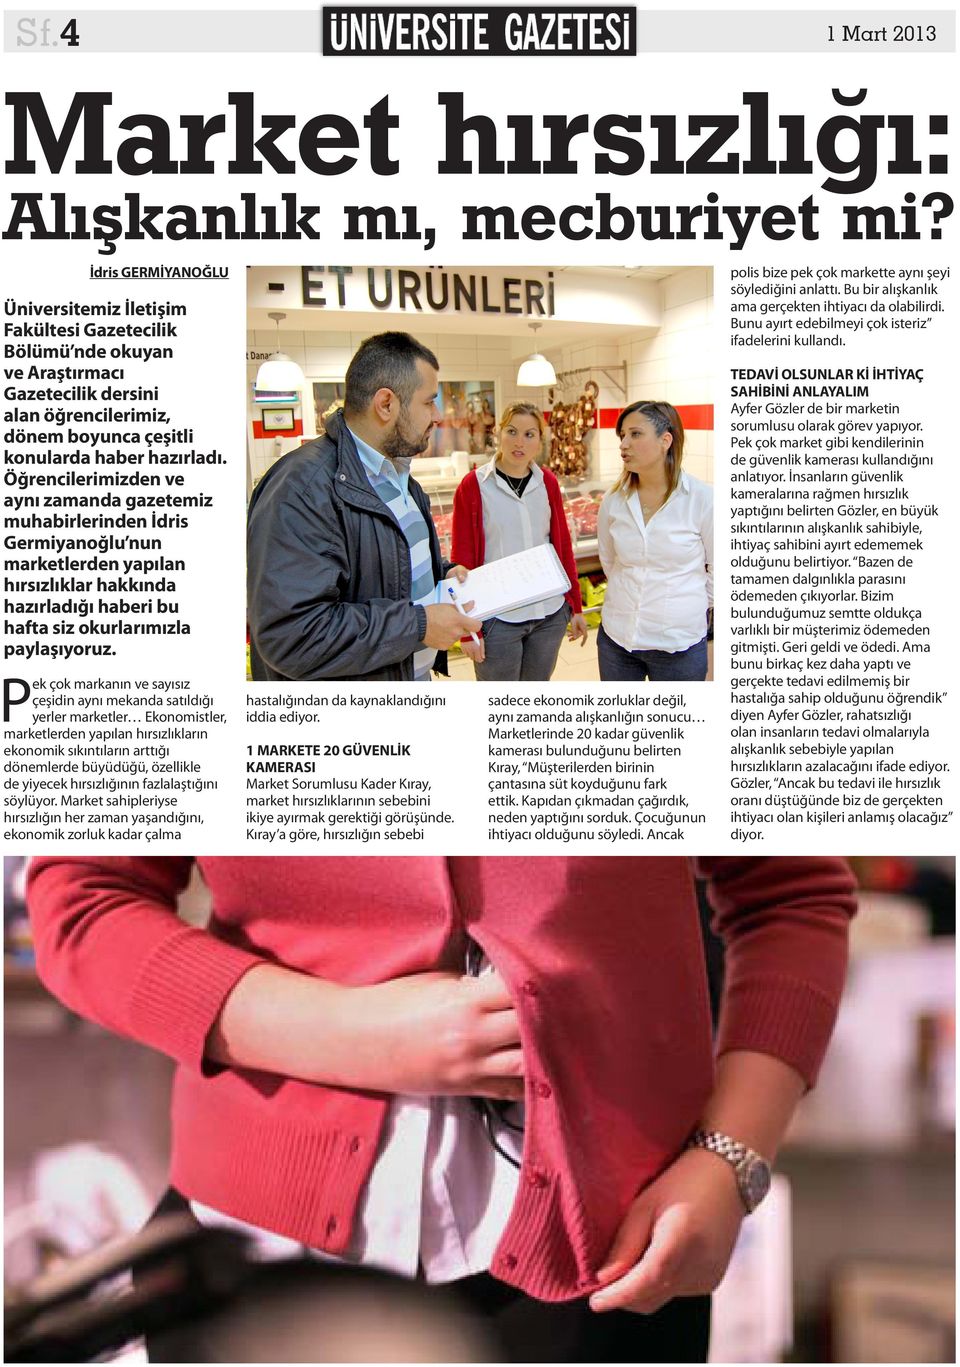 Öğrencilerimizden ve aynı zamanda gazetemiz muhabirlerinden İdris Germiyanoğlu nun marketlerden yapılan hırsızlıklar hakkında hazırladığı haberi bu hafta siz okurlarımızla paylaşıyoruz.